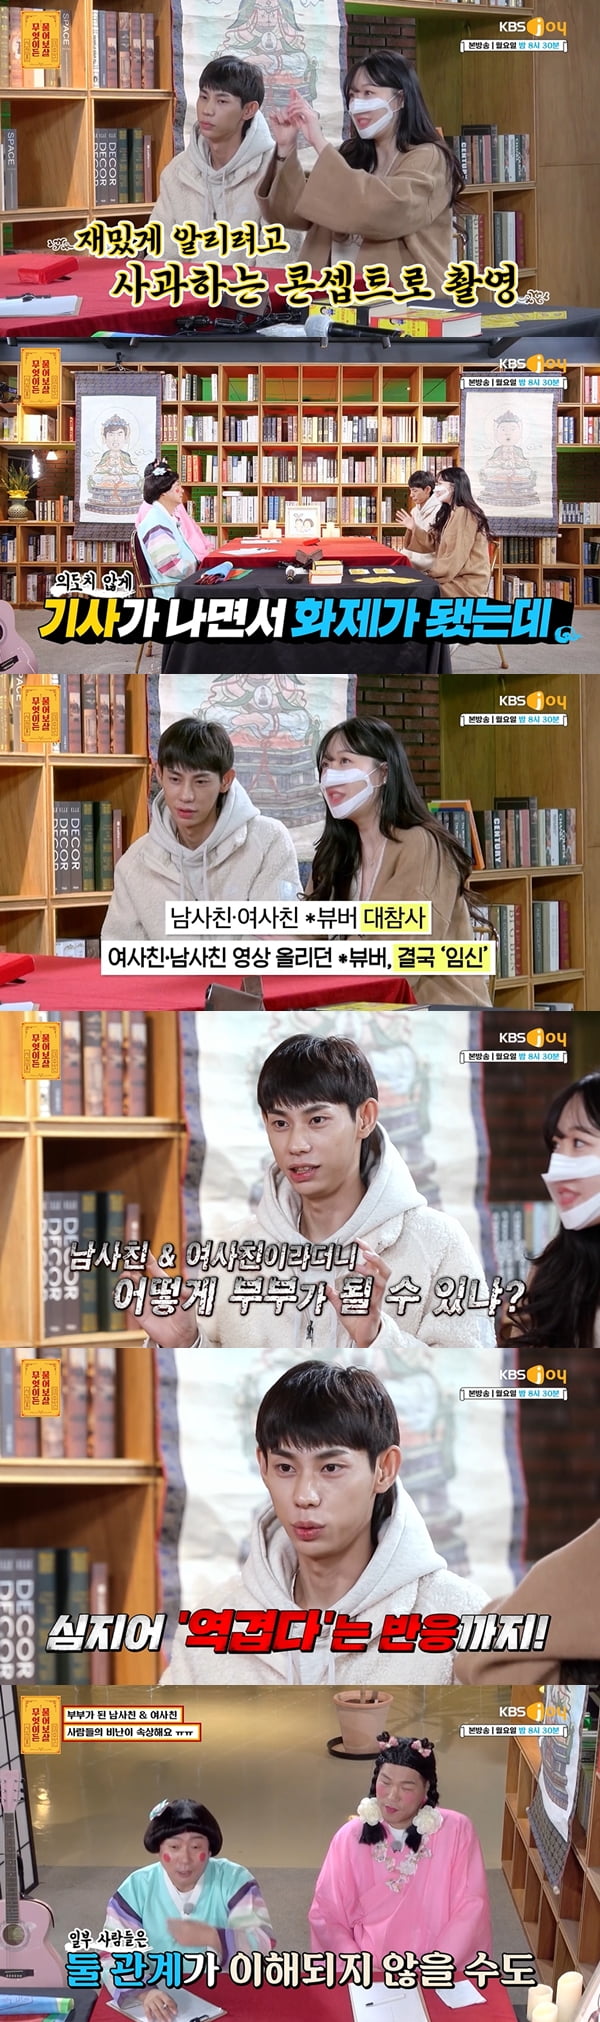 사진=KBS Joy '무엇이든 물어보살' 방송화면 캡처